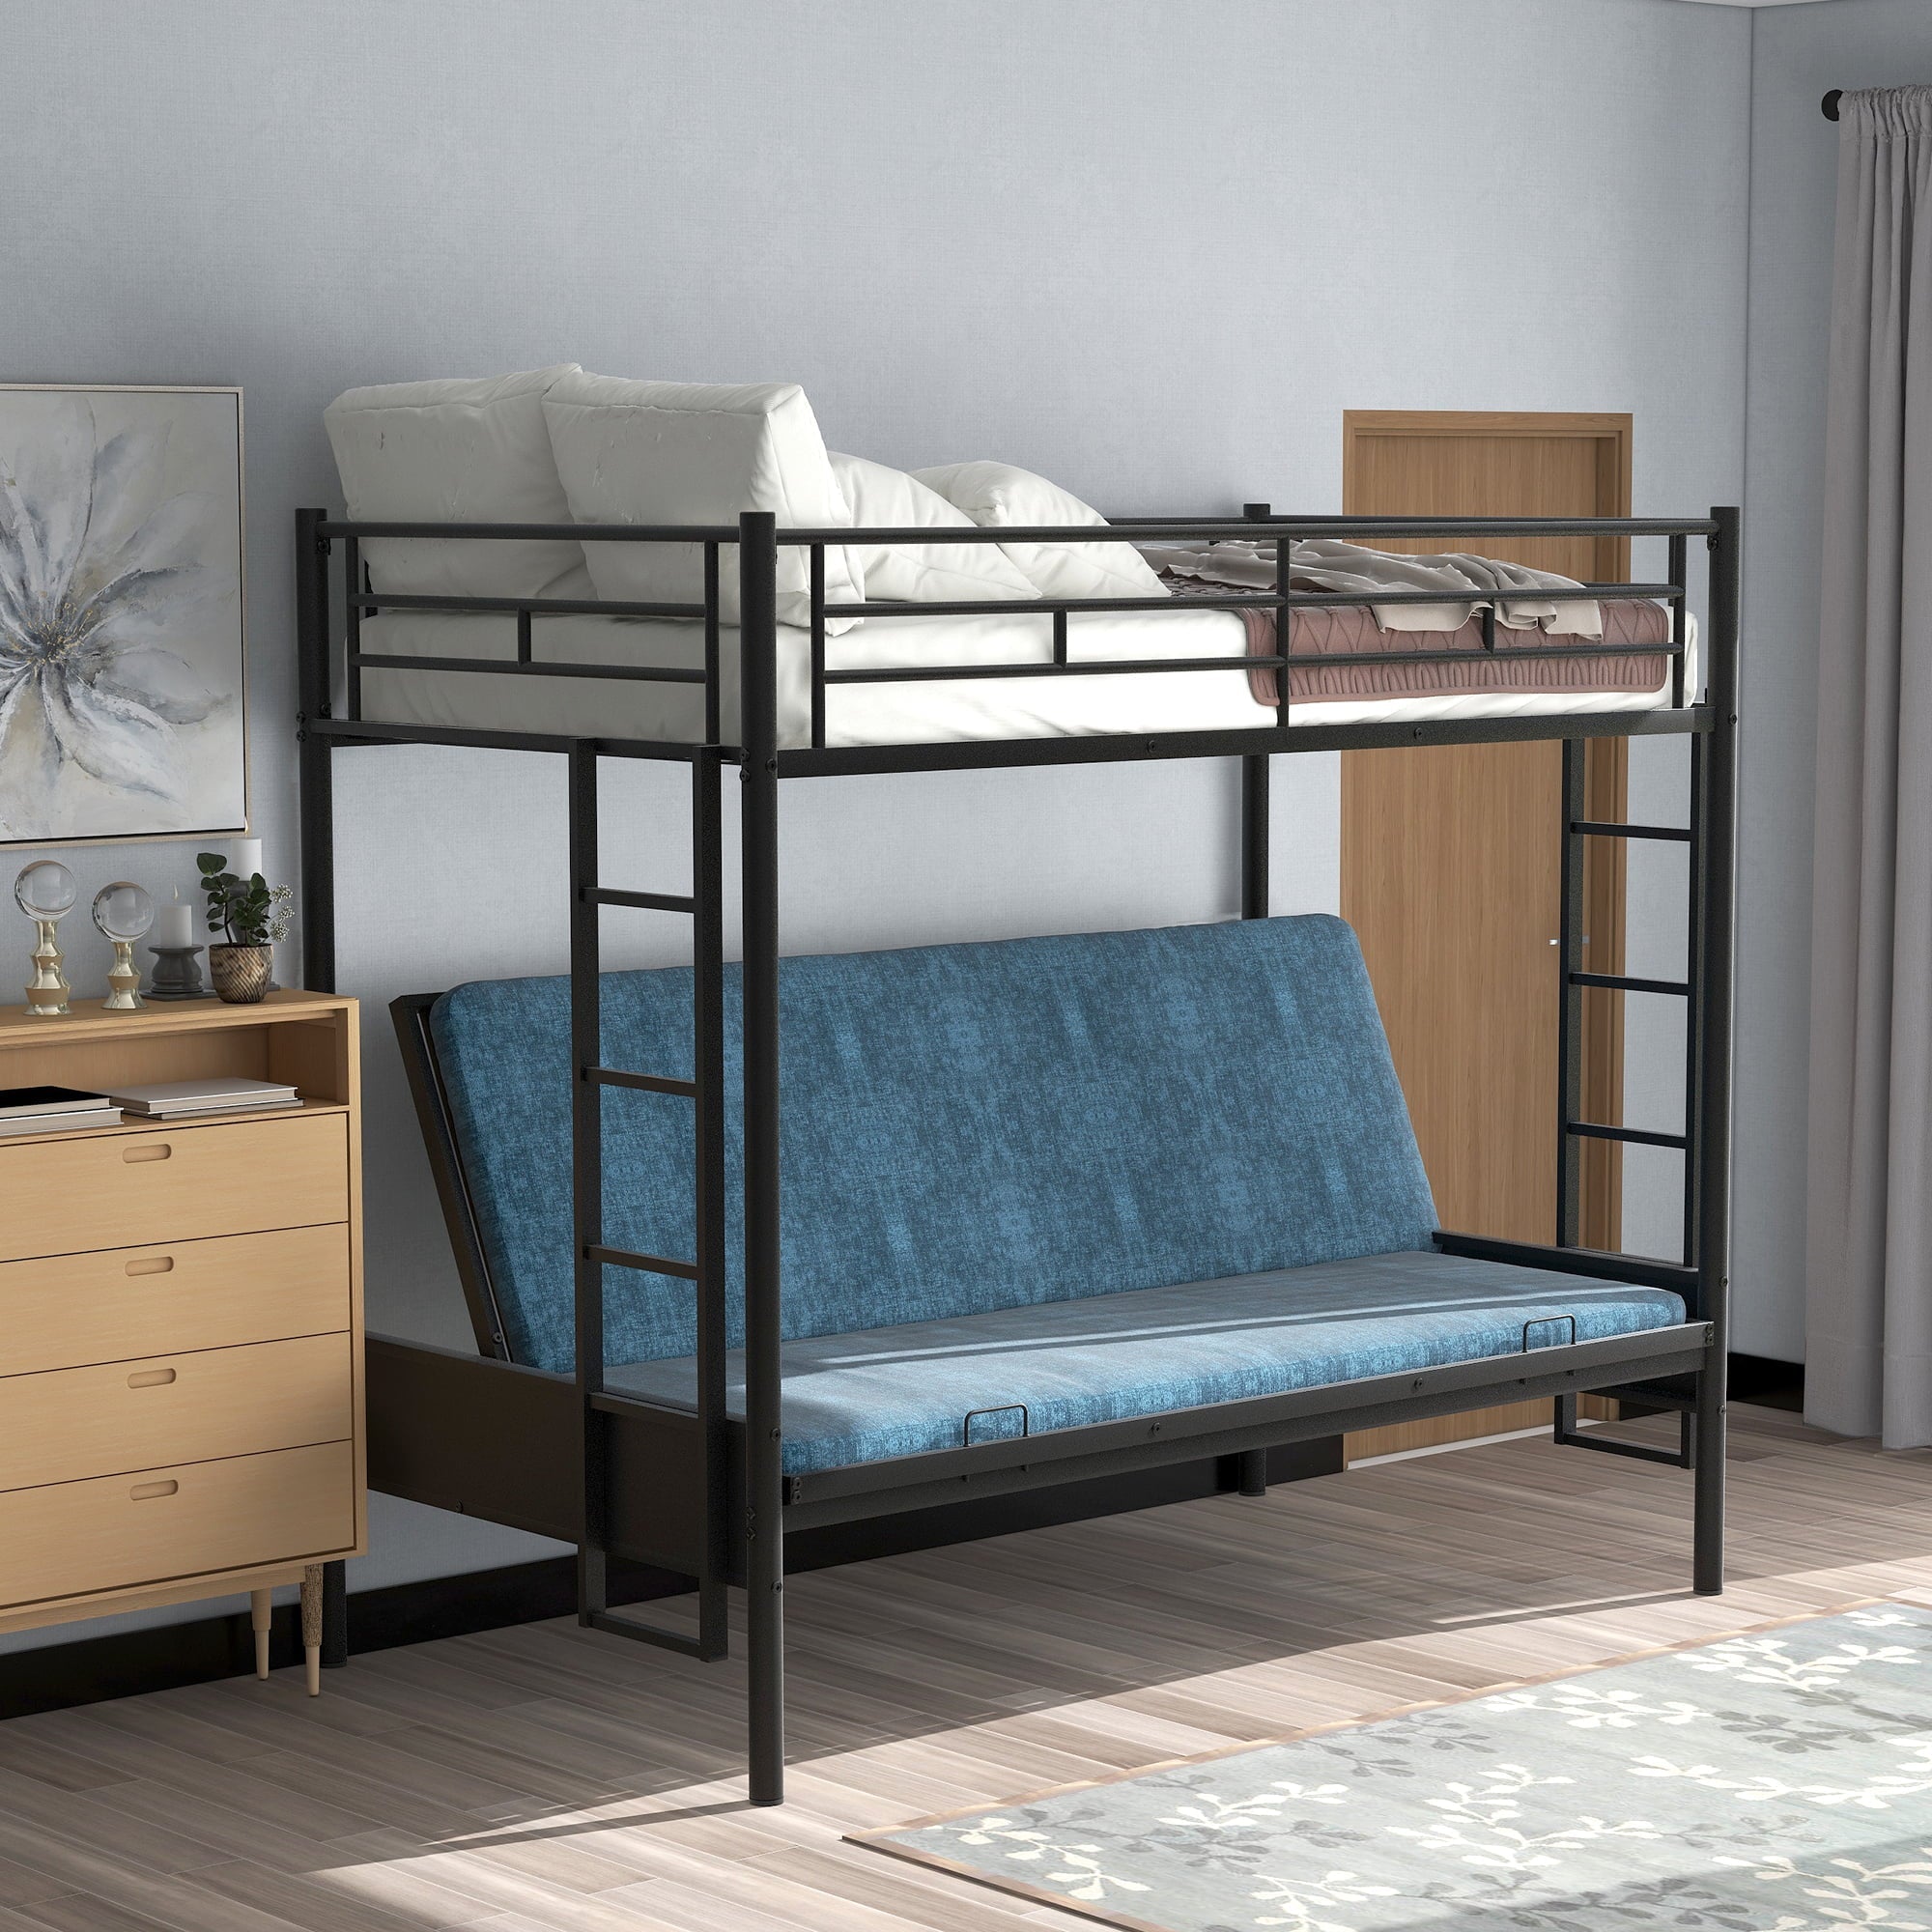 Merax Twin-over-Full Futon Metal Bunk Bed for Children's Bedroom